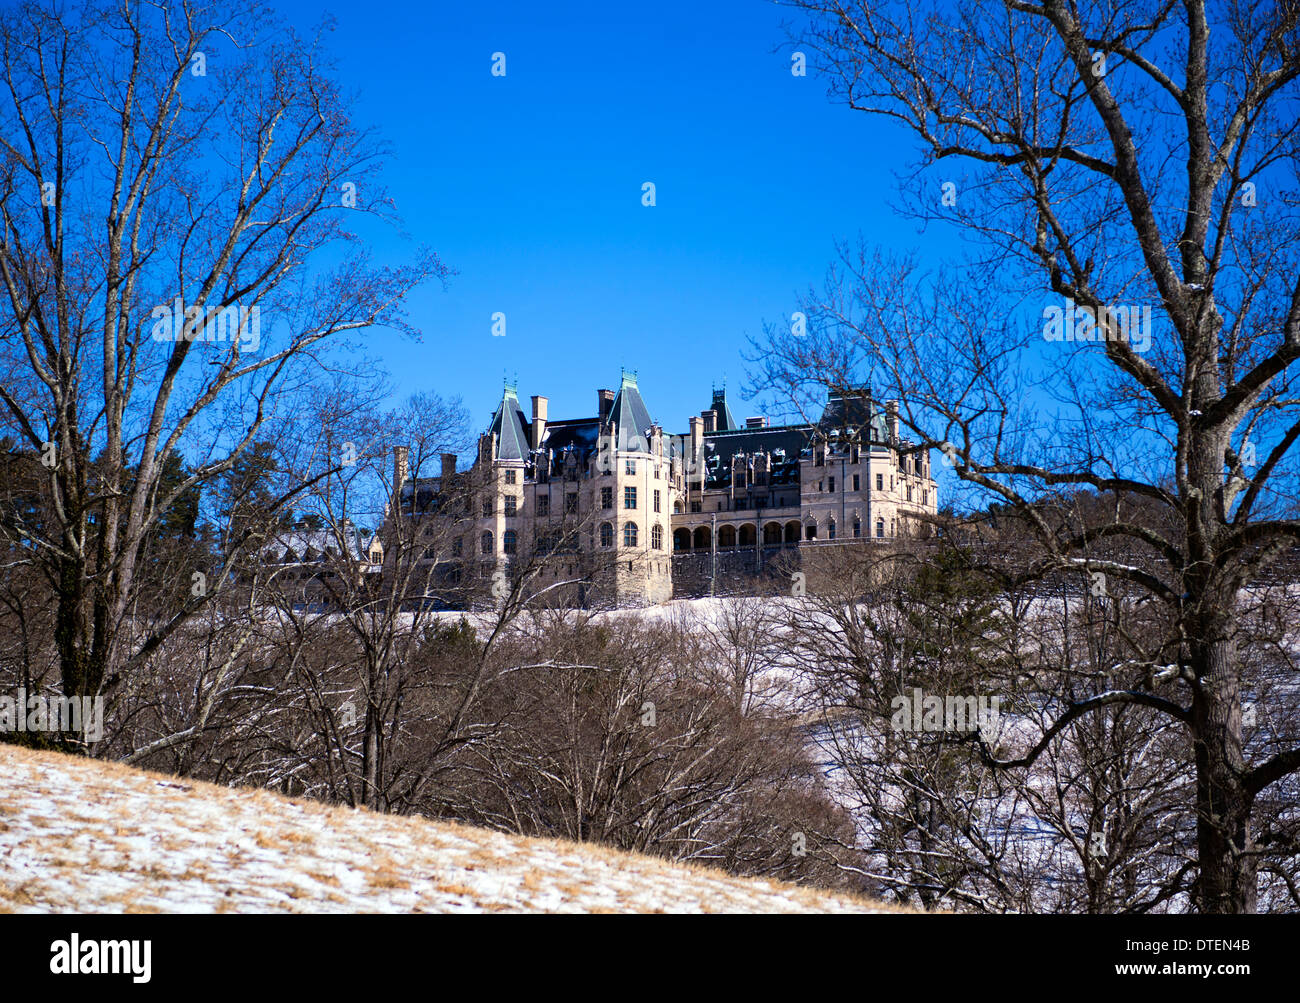 George Vanderbilt Mansion di Biltmore, vista posteriore, presenza di neve sul terreno, inverno, scena nevoso costruito 1895 Foto Stock